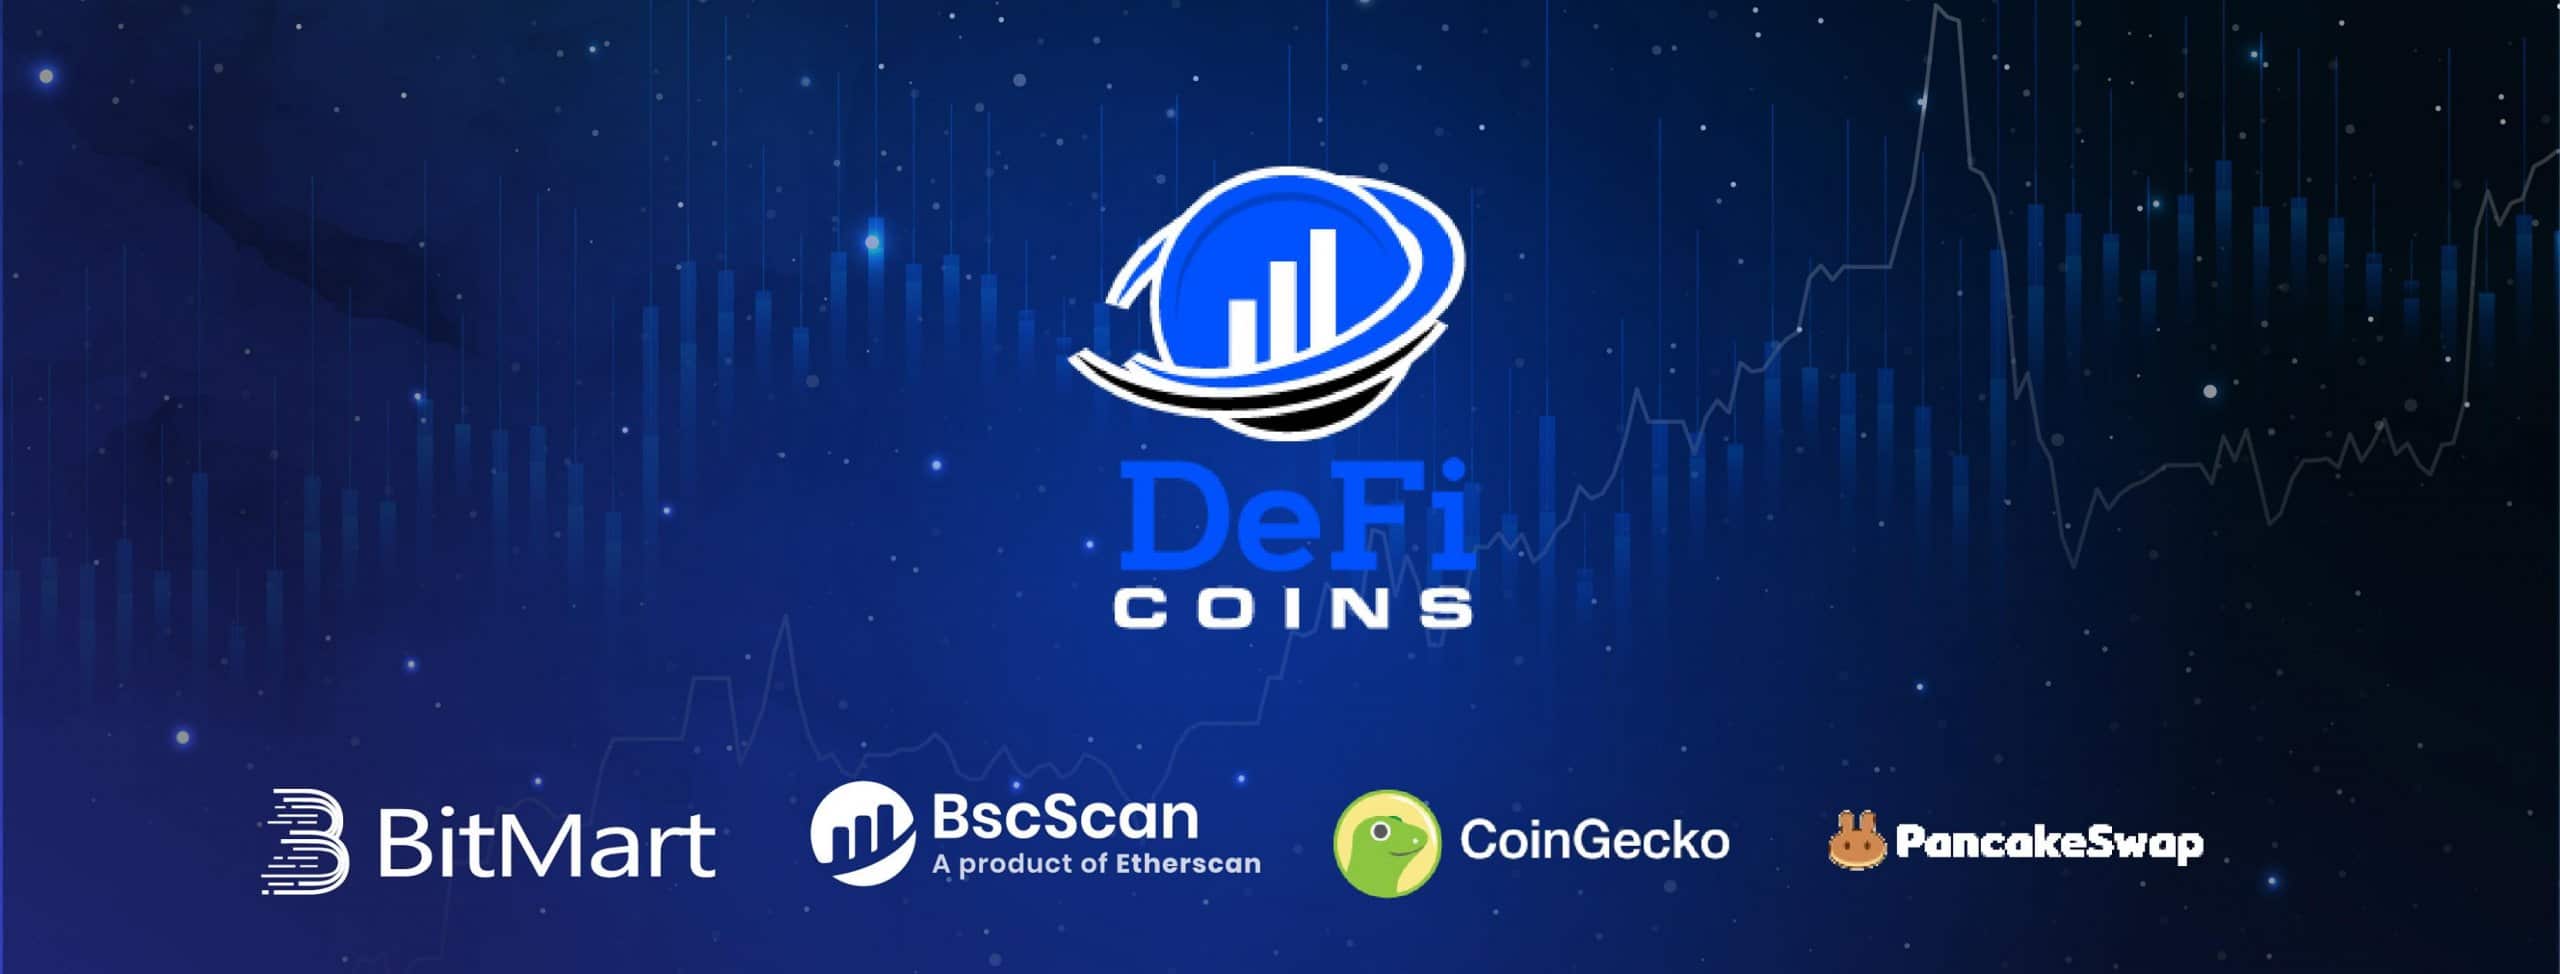 DeFi Coin News